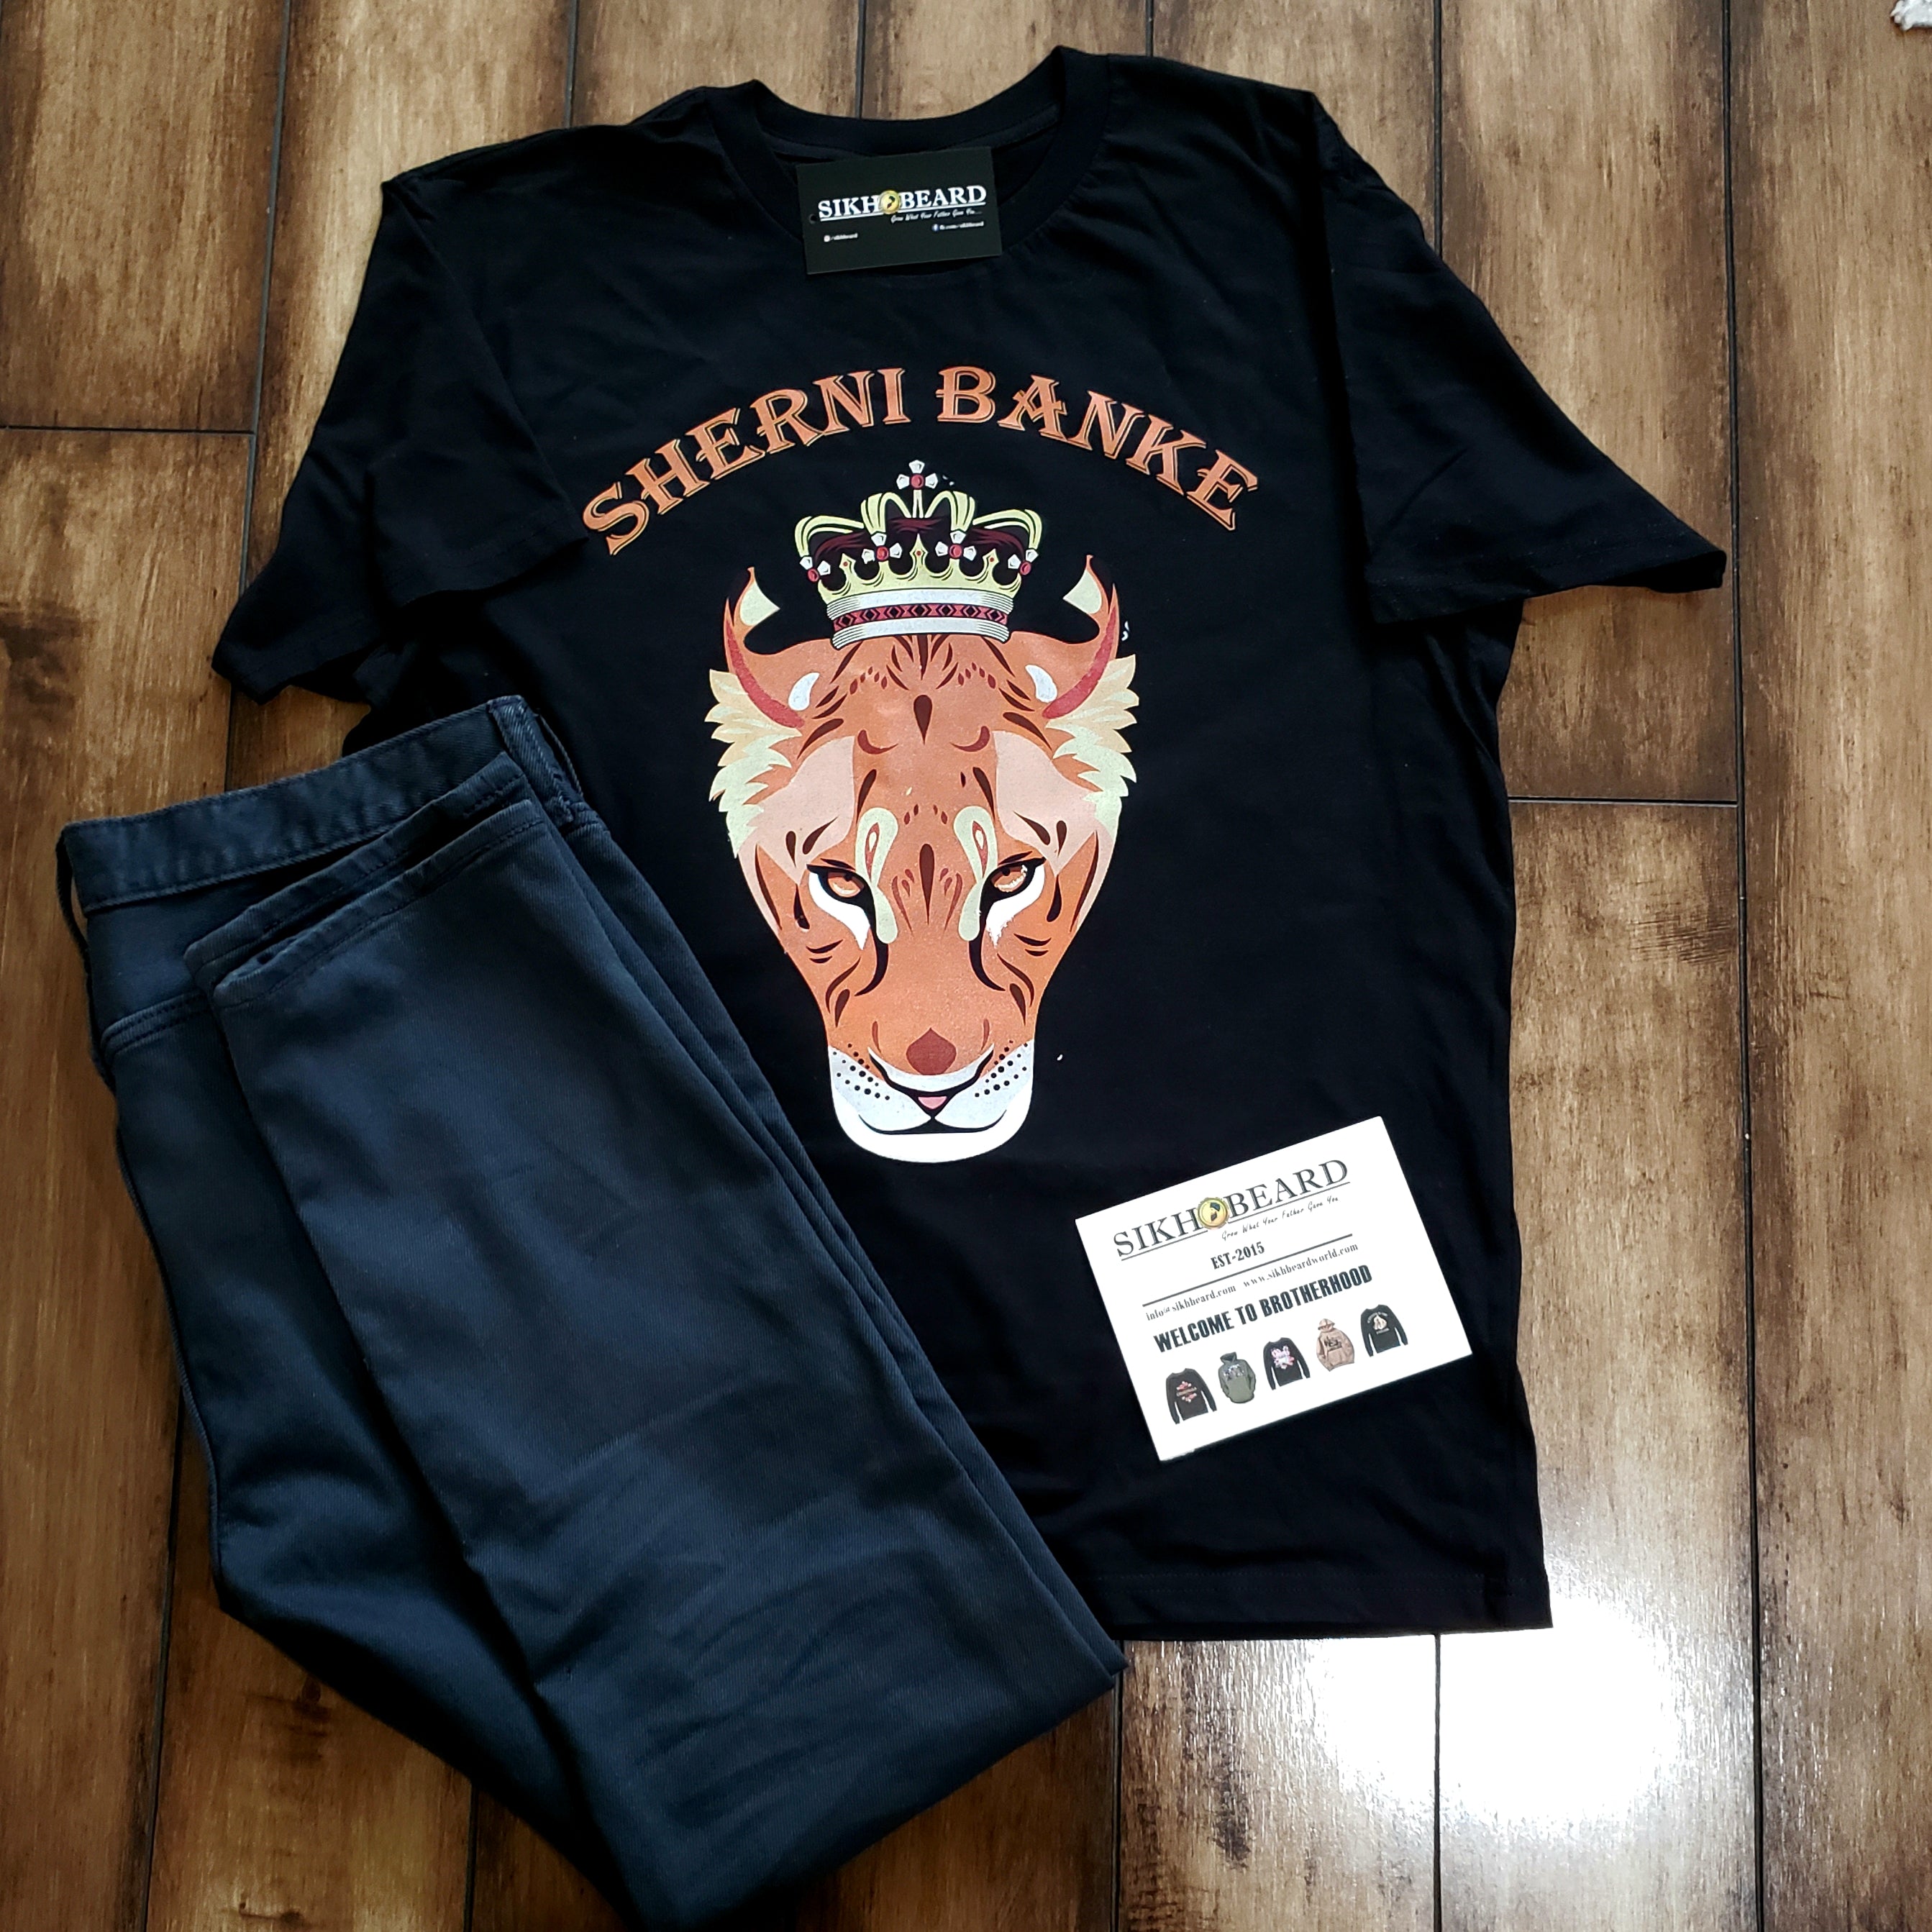 Sherni BanKe T-Shirt